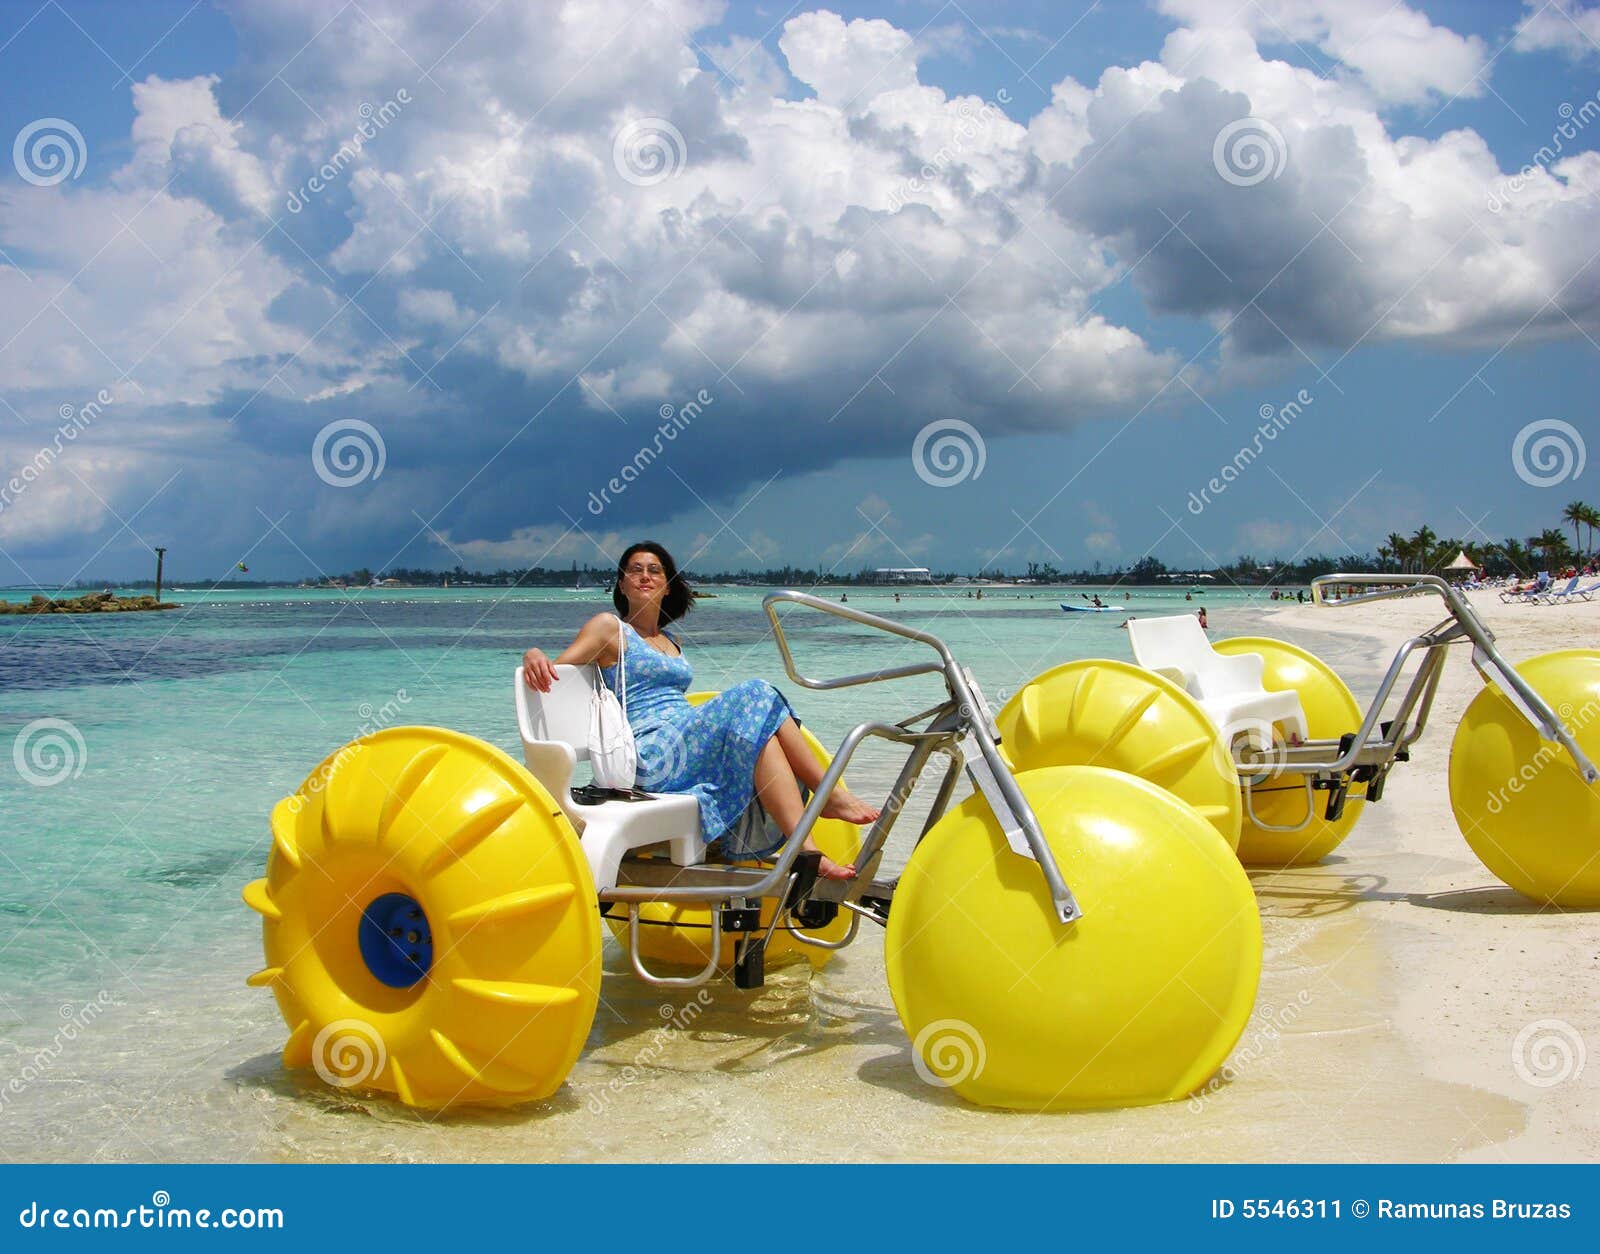 Bicicletas del agua imagen de archivo. Imagen de turistas - 5546311